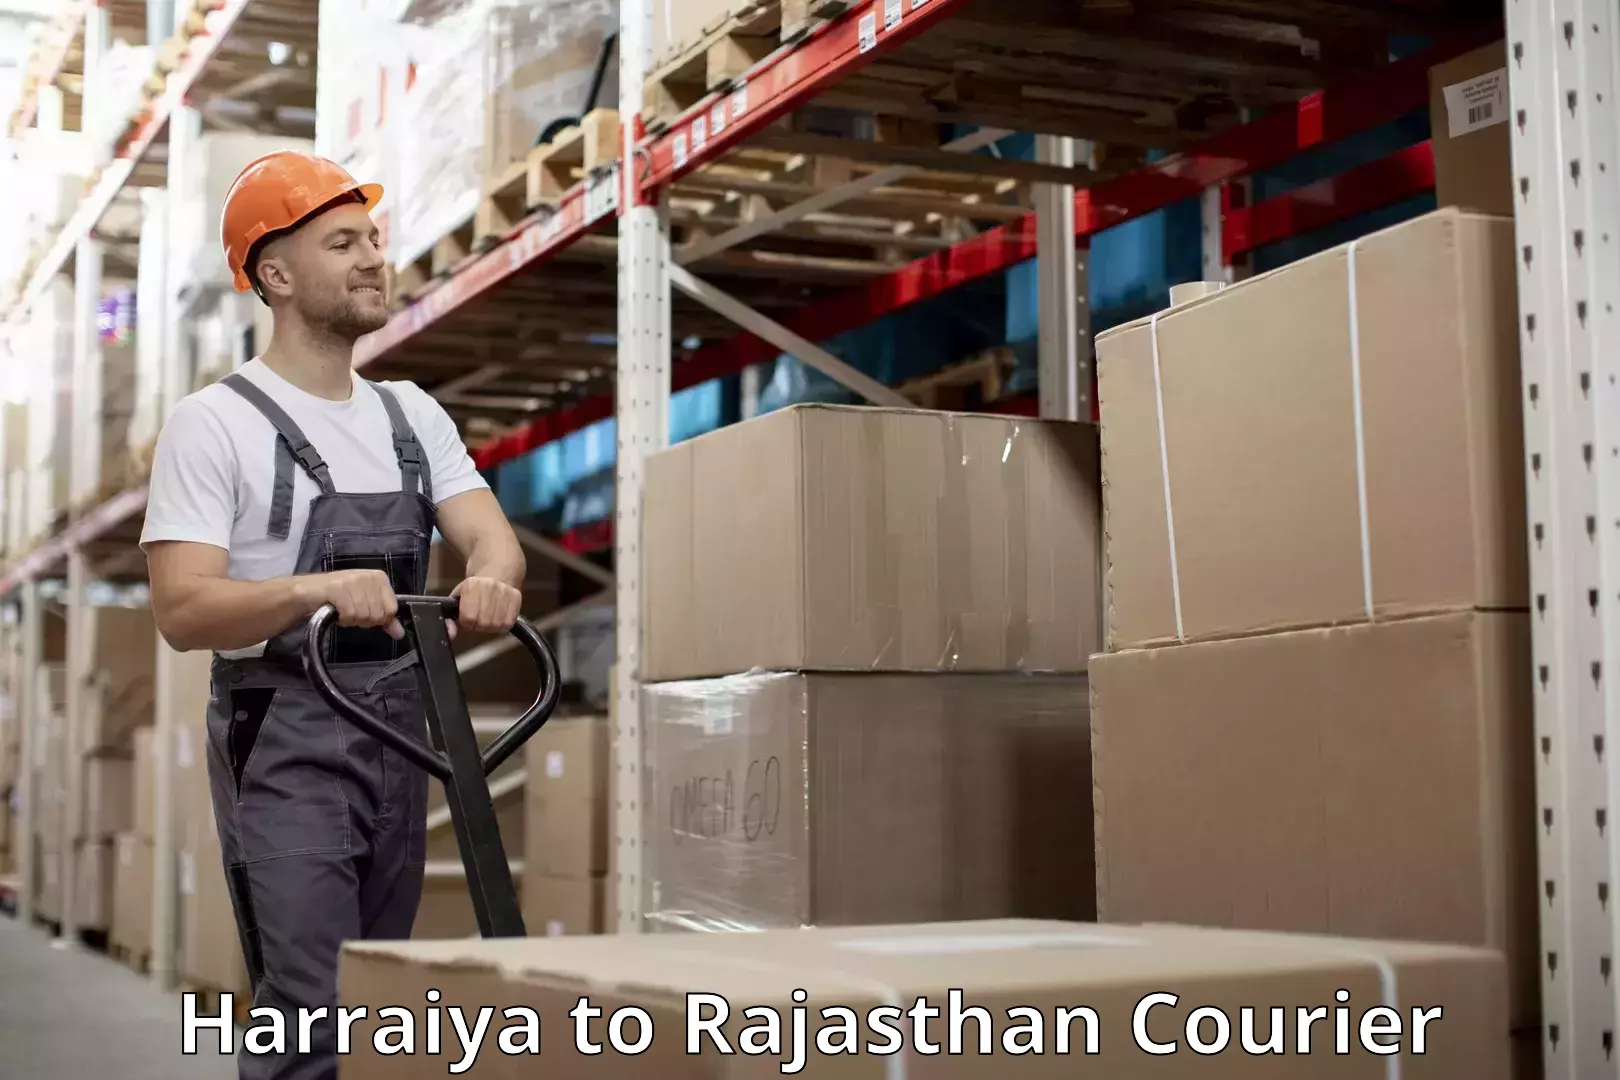 Luggage shipment specialists Harraiya to Rajasthan